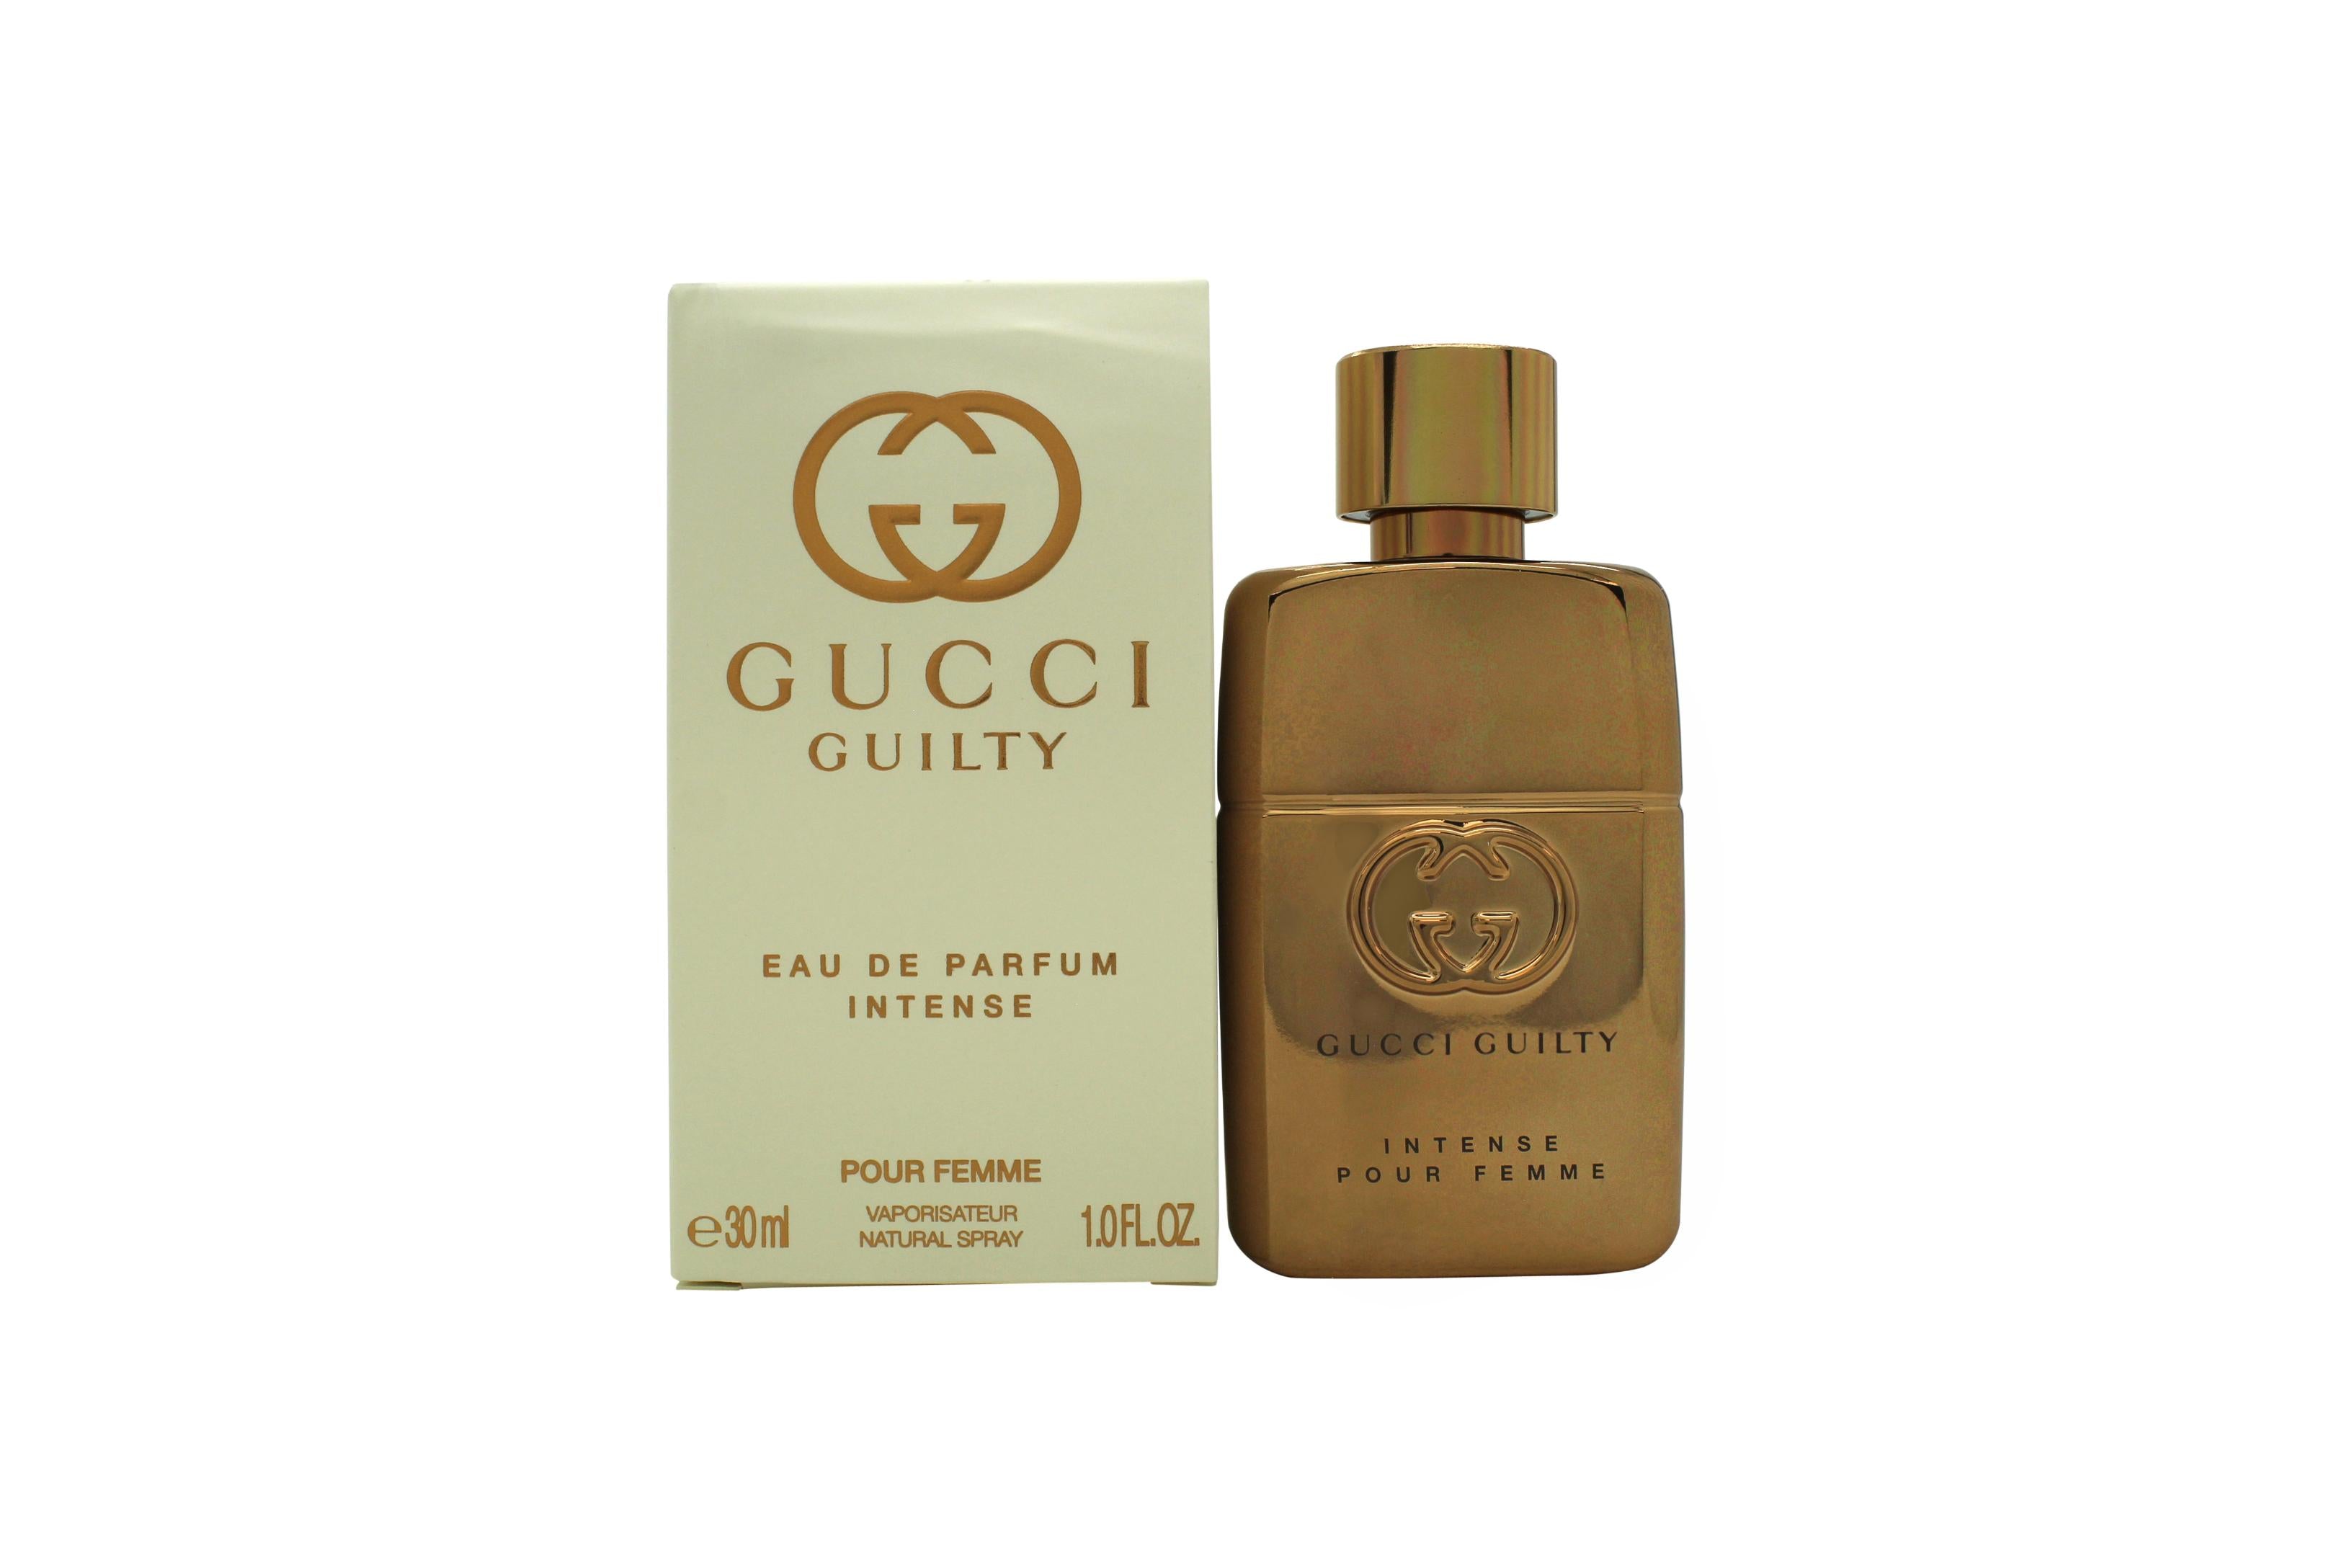 View Gucci Guilty Eau de Parfum Intense Pour Femme 30ml Spray information